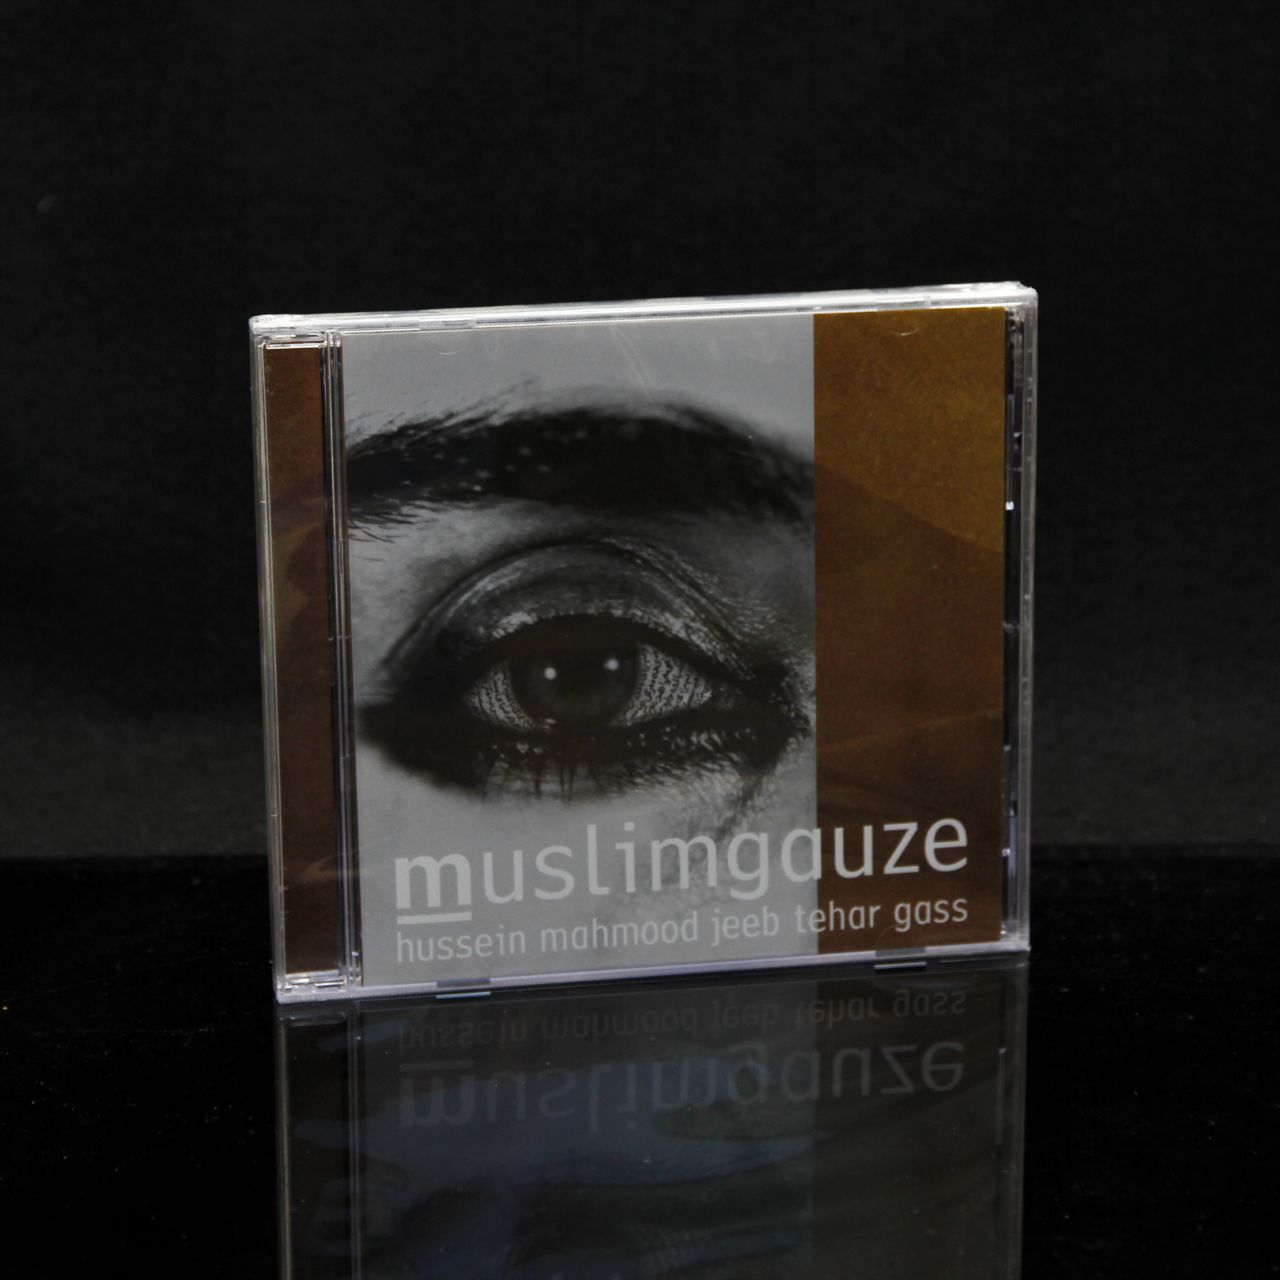 MUSLIMGAUZE - Hussein Mahmood Jeeb Tehar Gass - CD